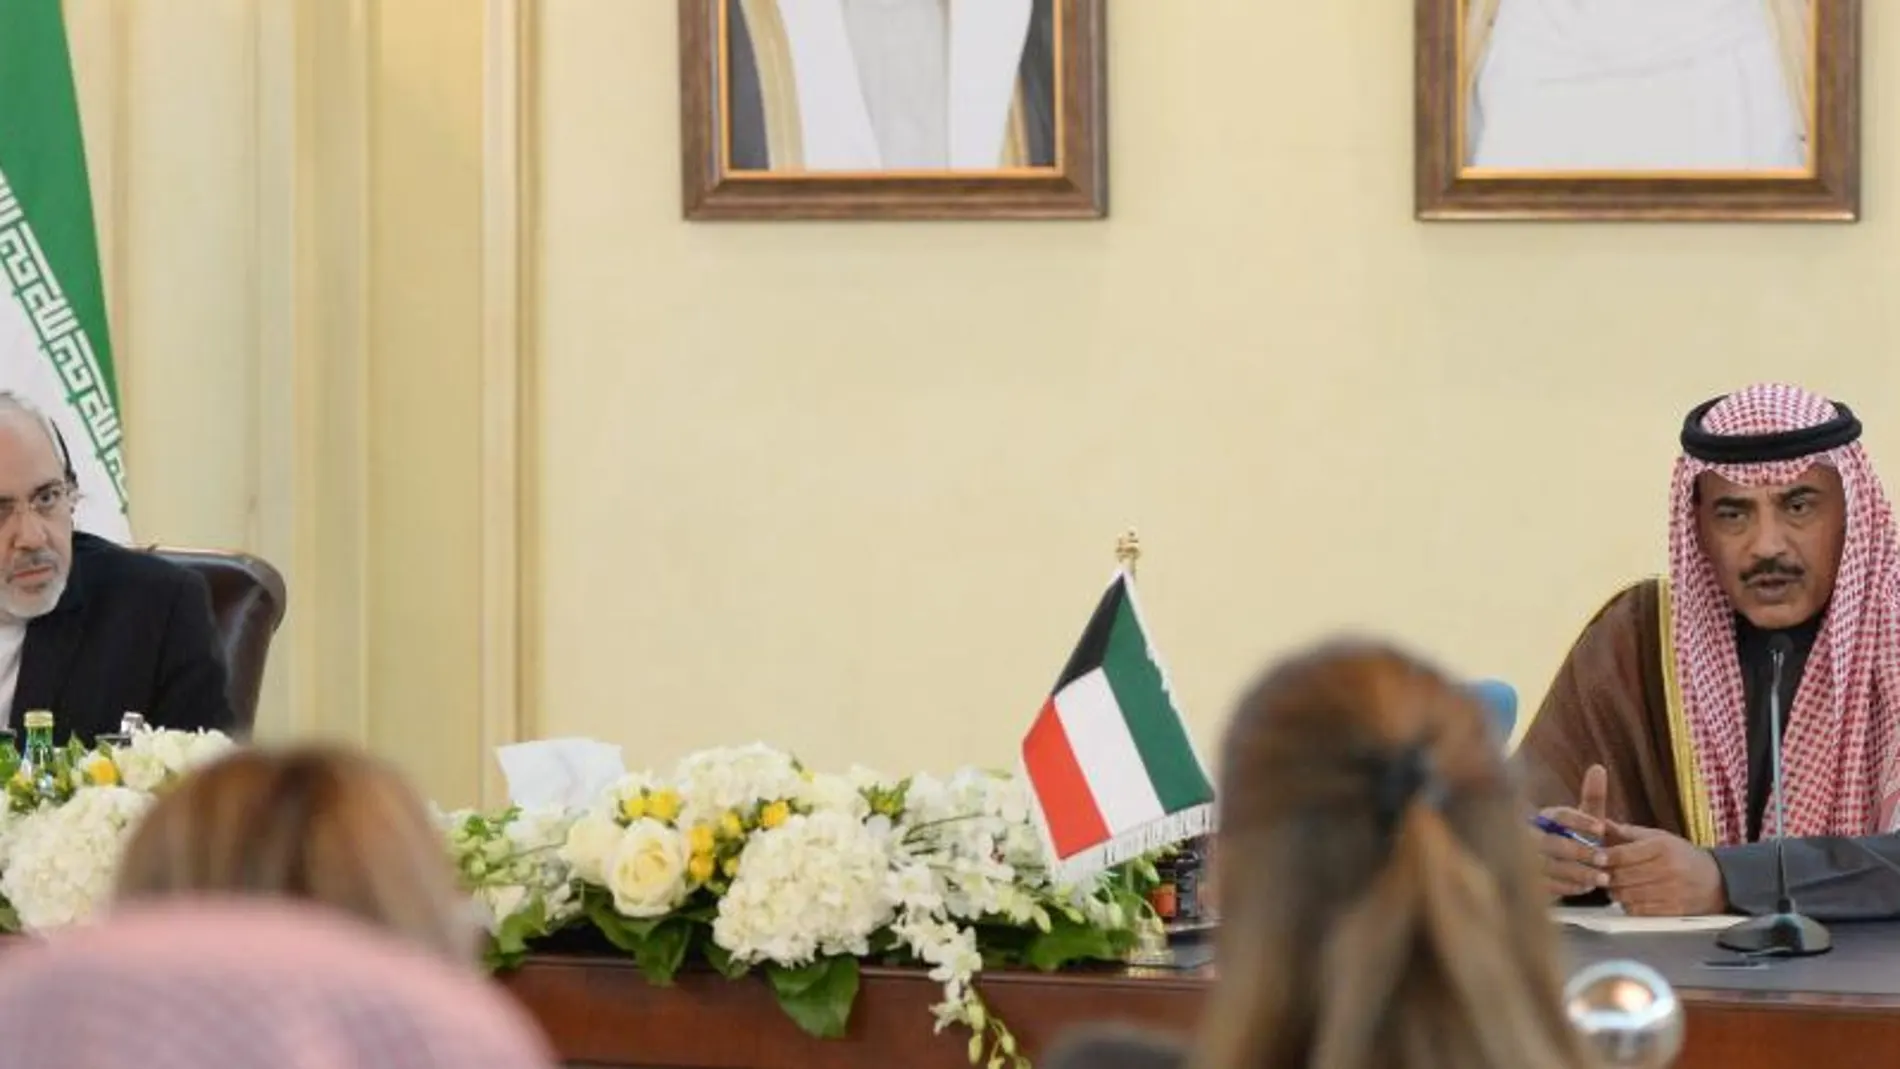 El ministro iraní Mohammad Javad Zarif (L) y el ministro kuwaití Sheik Sabah Khalid Al Hamad Al Sabah (R) en una conferencia en Kuwait, hoy, 1 de diciembre de 2013.